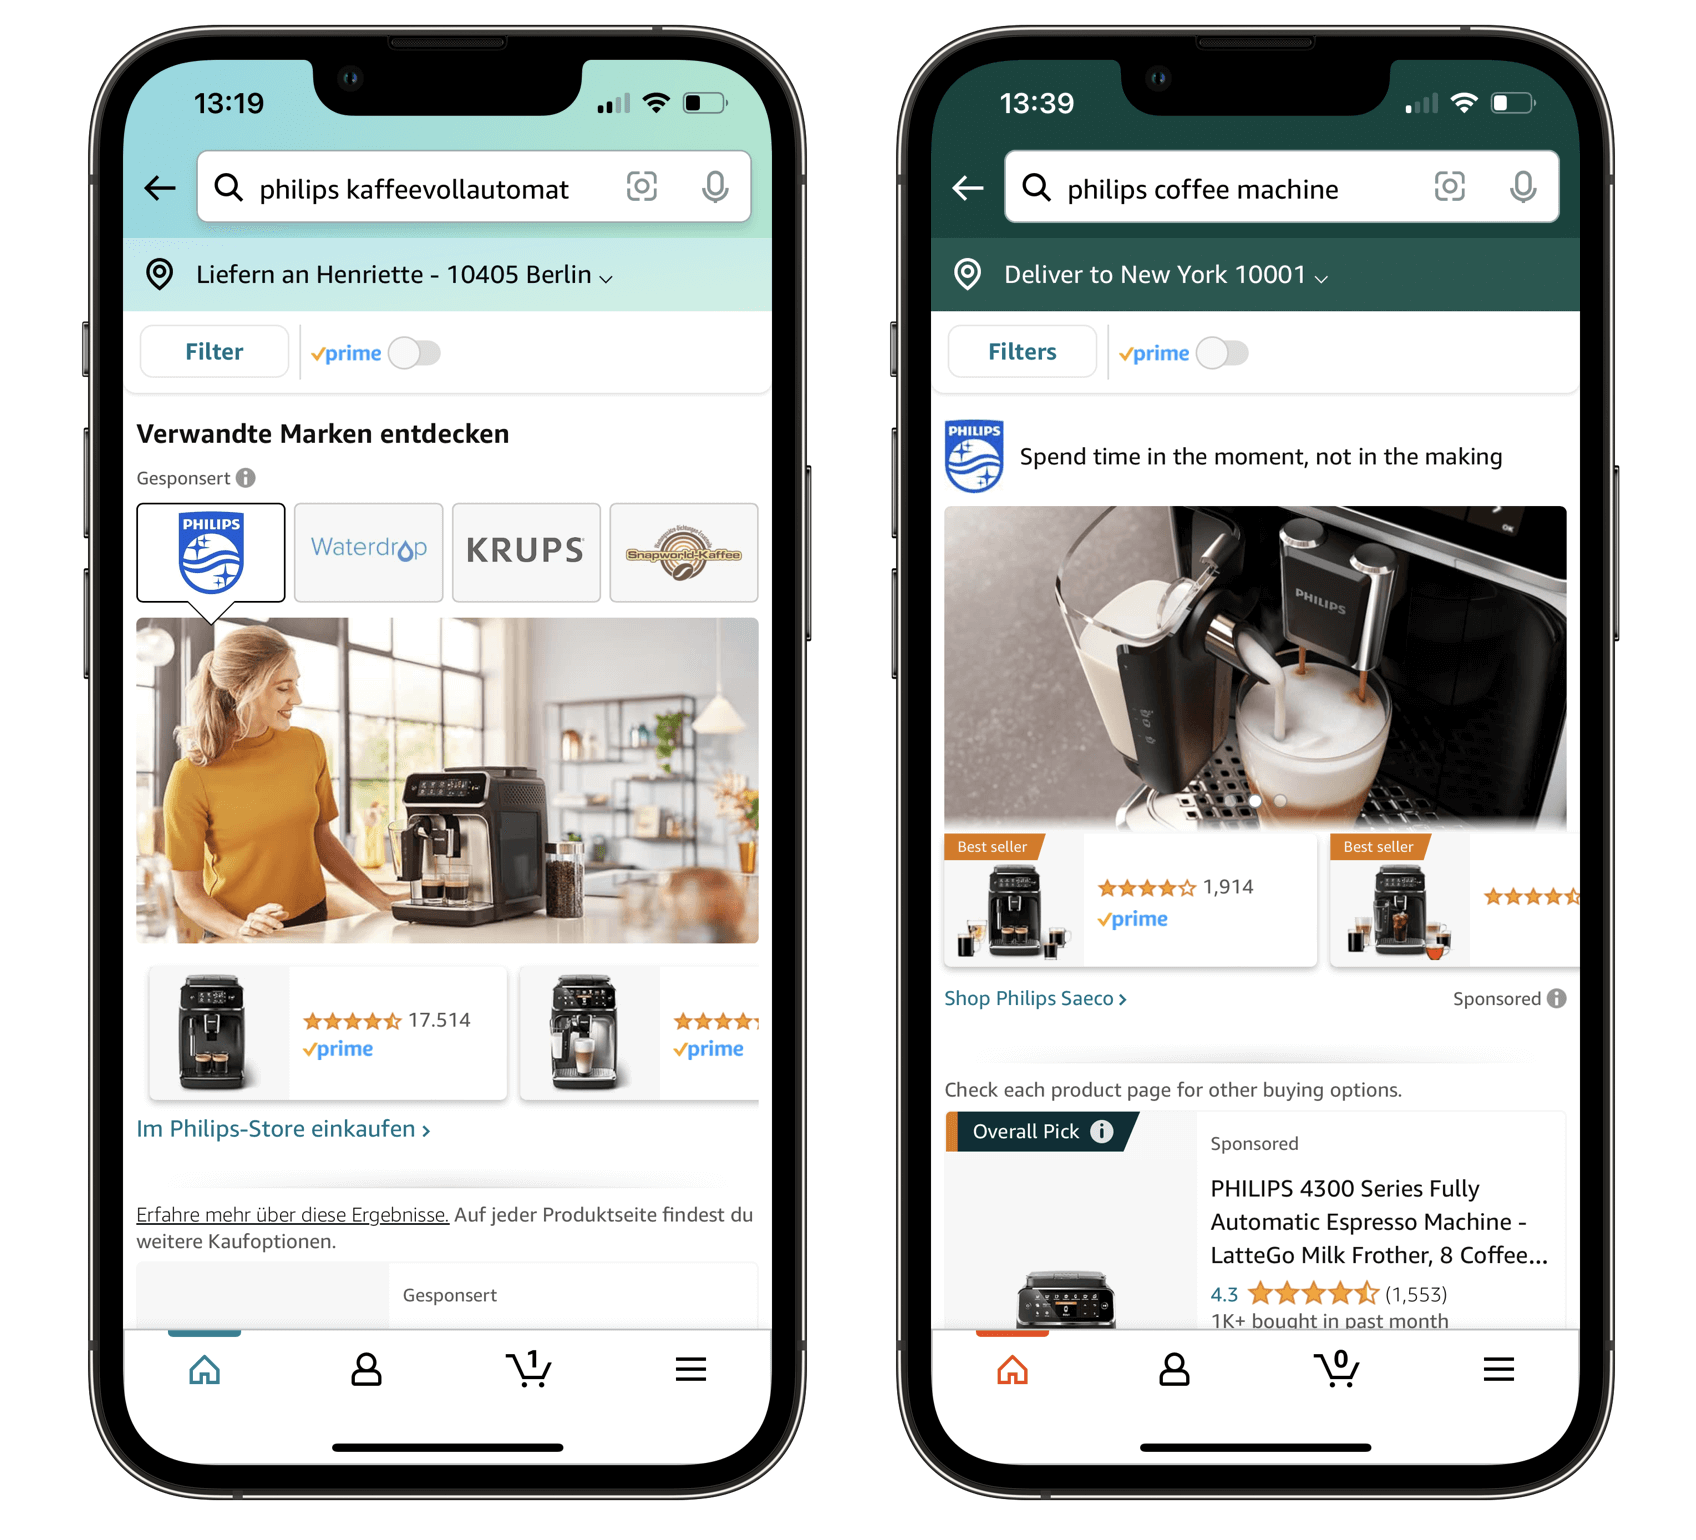 Sucherergebnisse in der deutschen Amazon-App (links) und Sucherergebnisse in der amerikanischen Amazon-App (rechts)